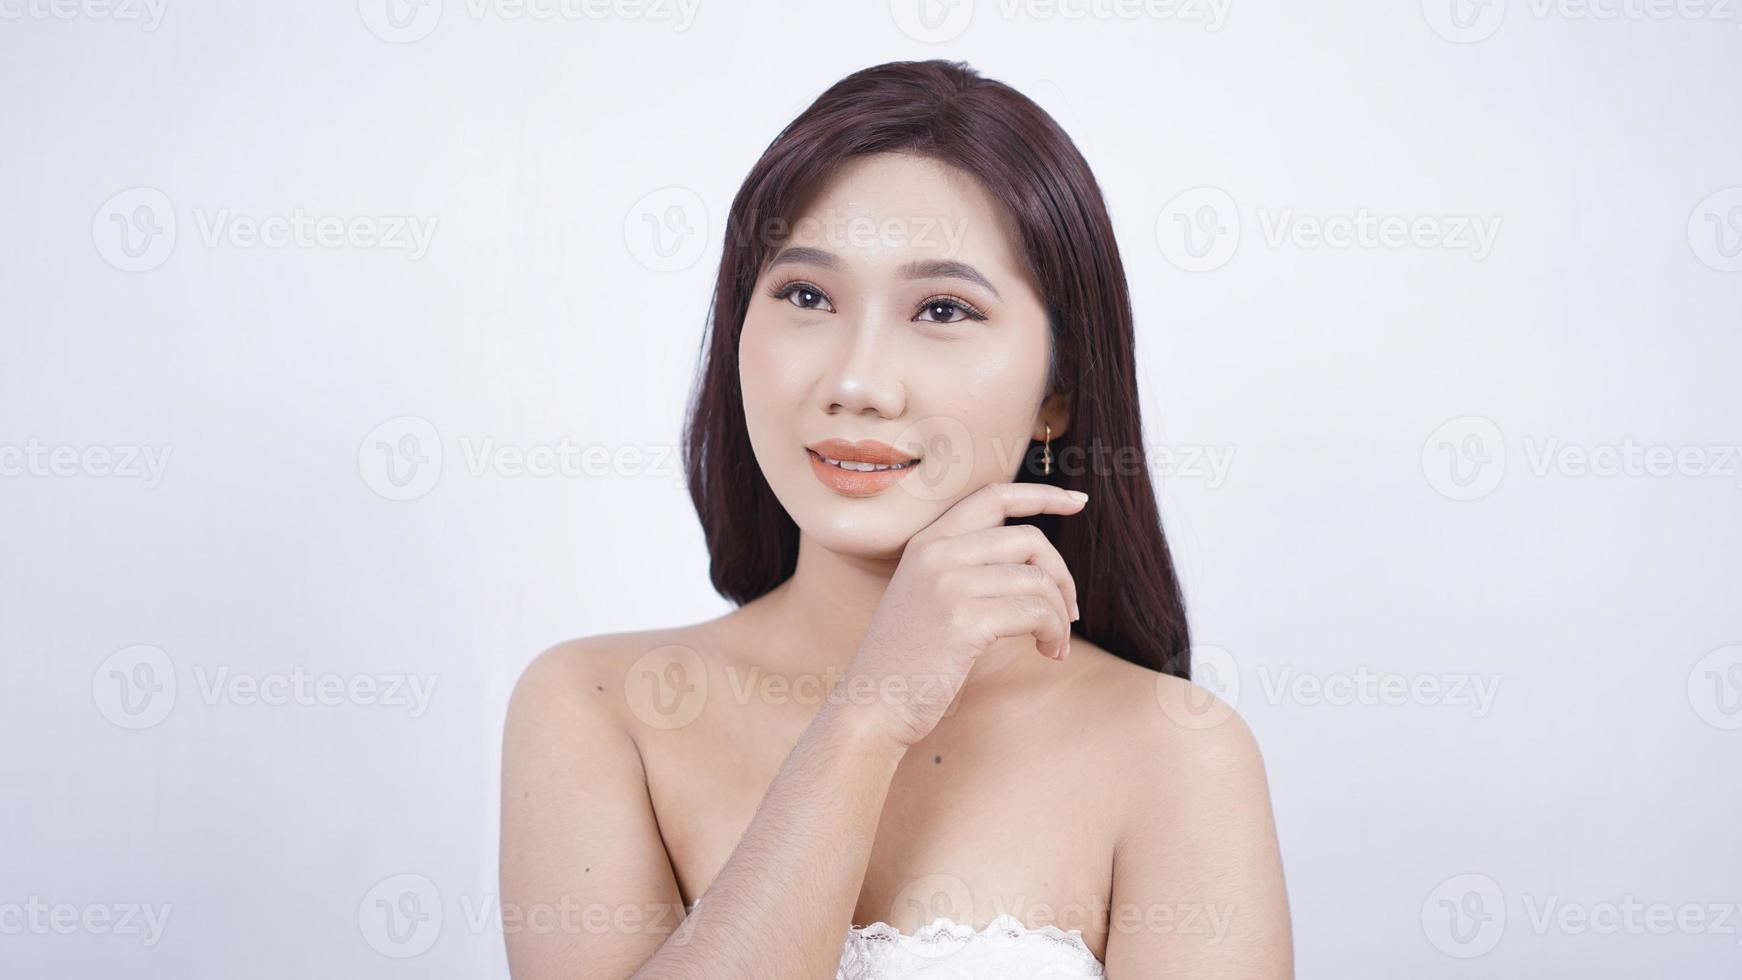 asiatisk flicka med smink ser elegant ut isolerad på vit bakgrund foto